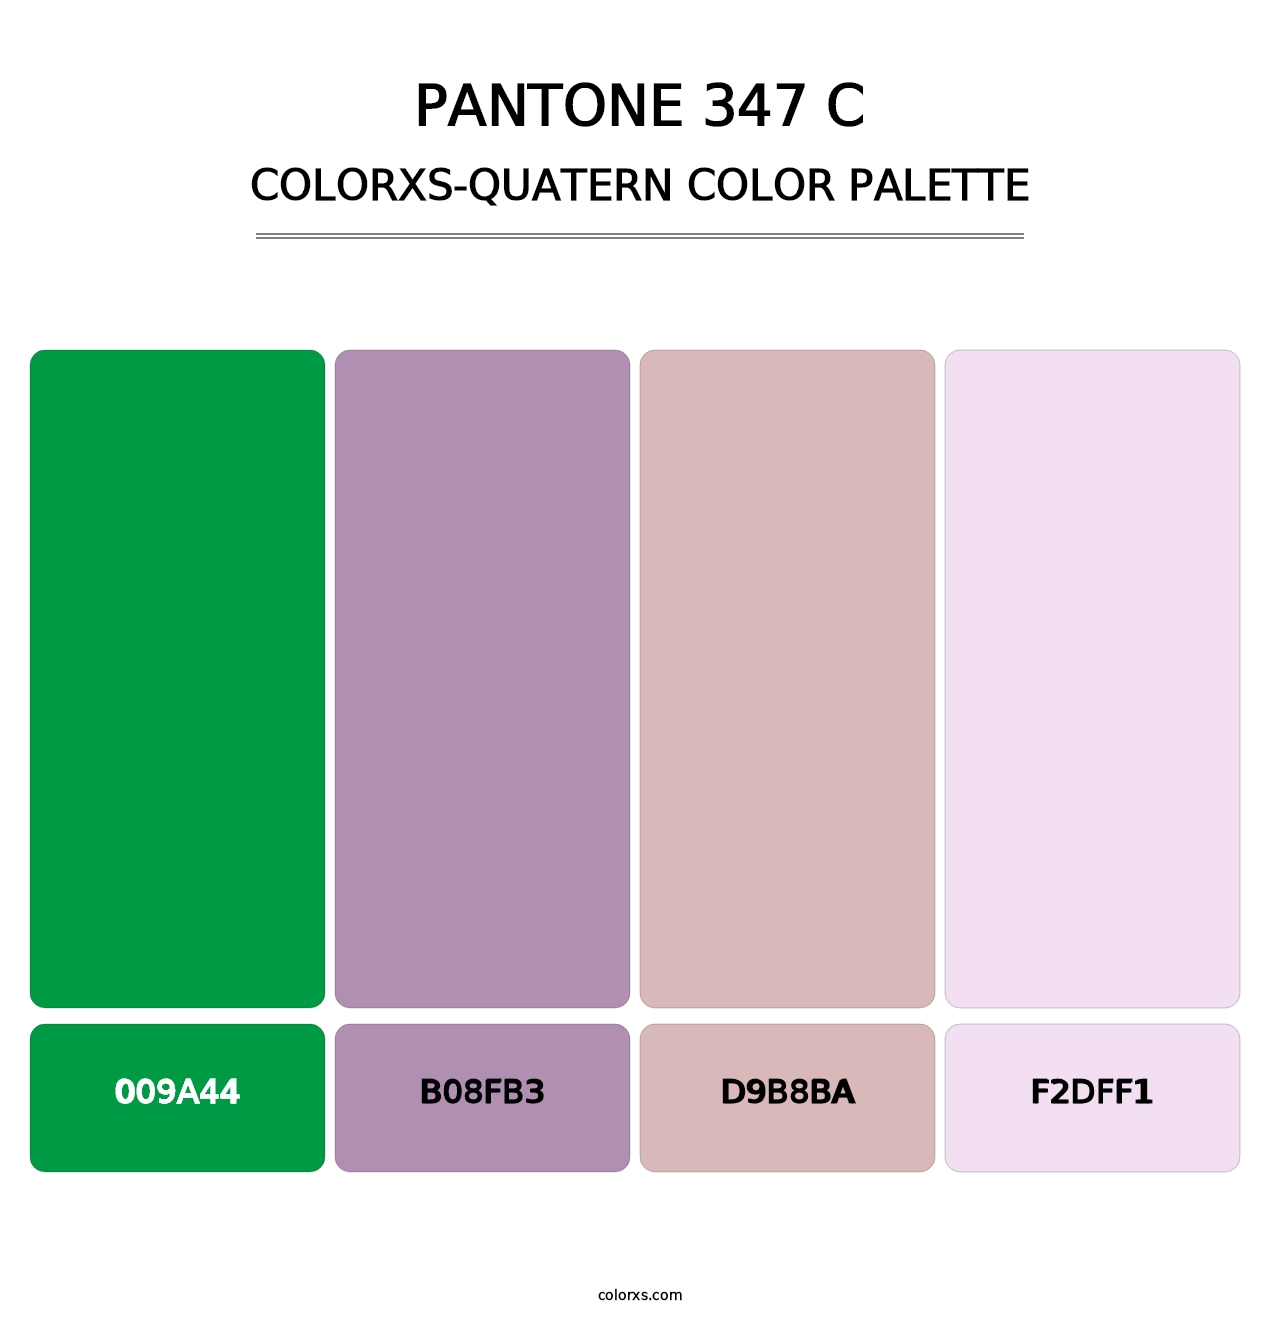 PANTONE 347 C - Colorxs Quatern Palette